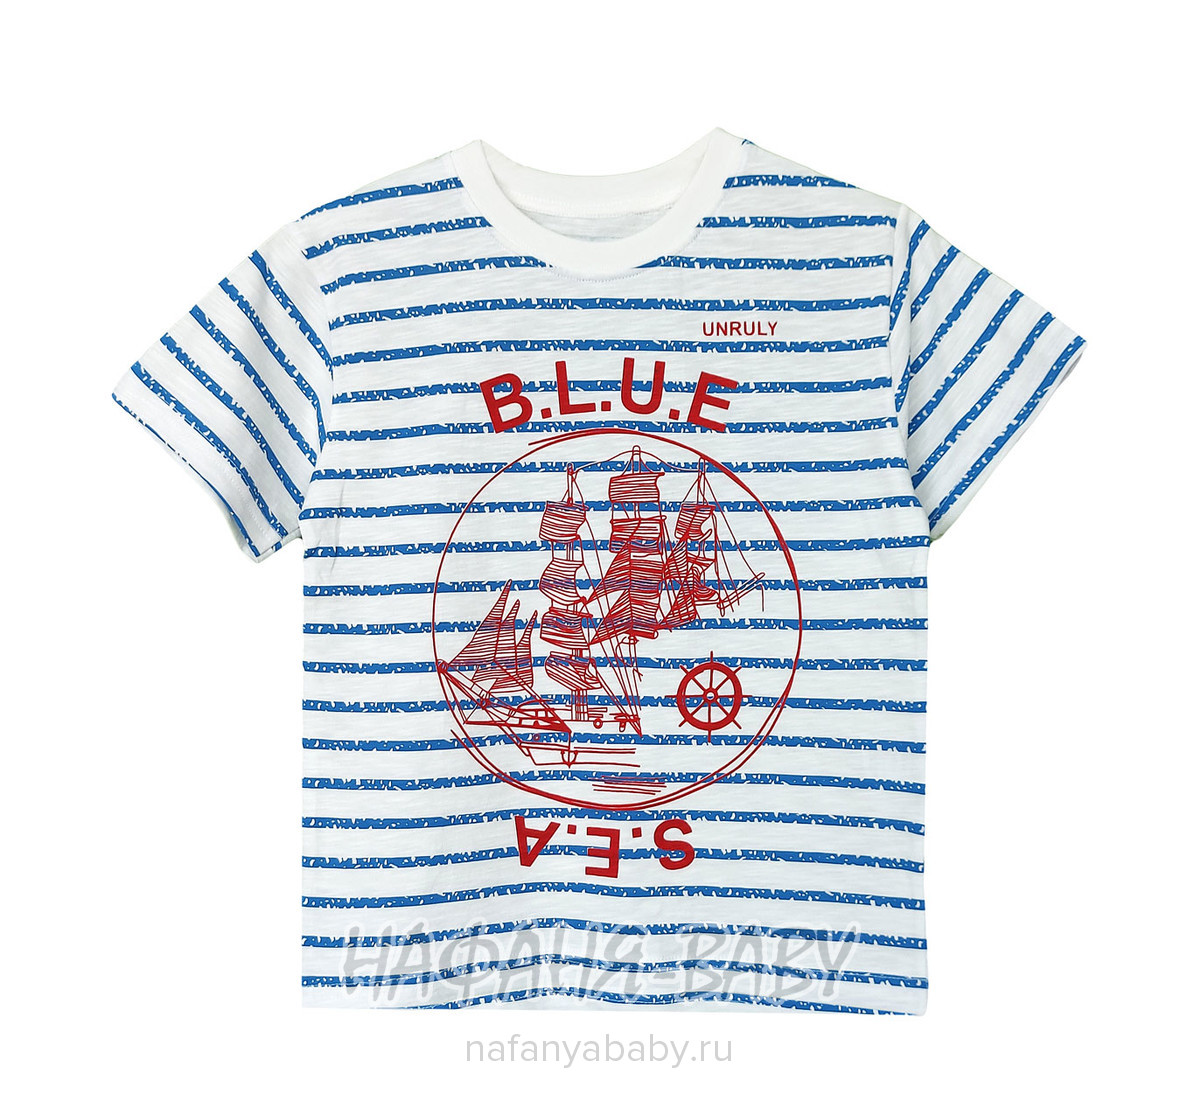 Детская футболка UNRULY арт: 3289, 10-15 лет, 5-9 лет, цвет кремовый, оптом Турция